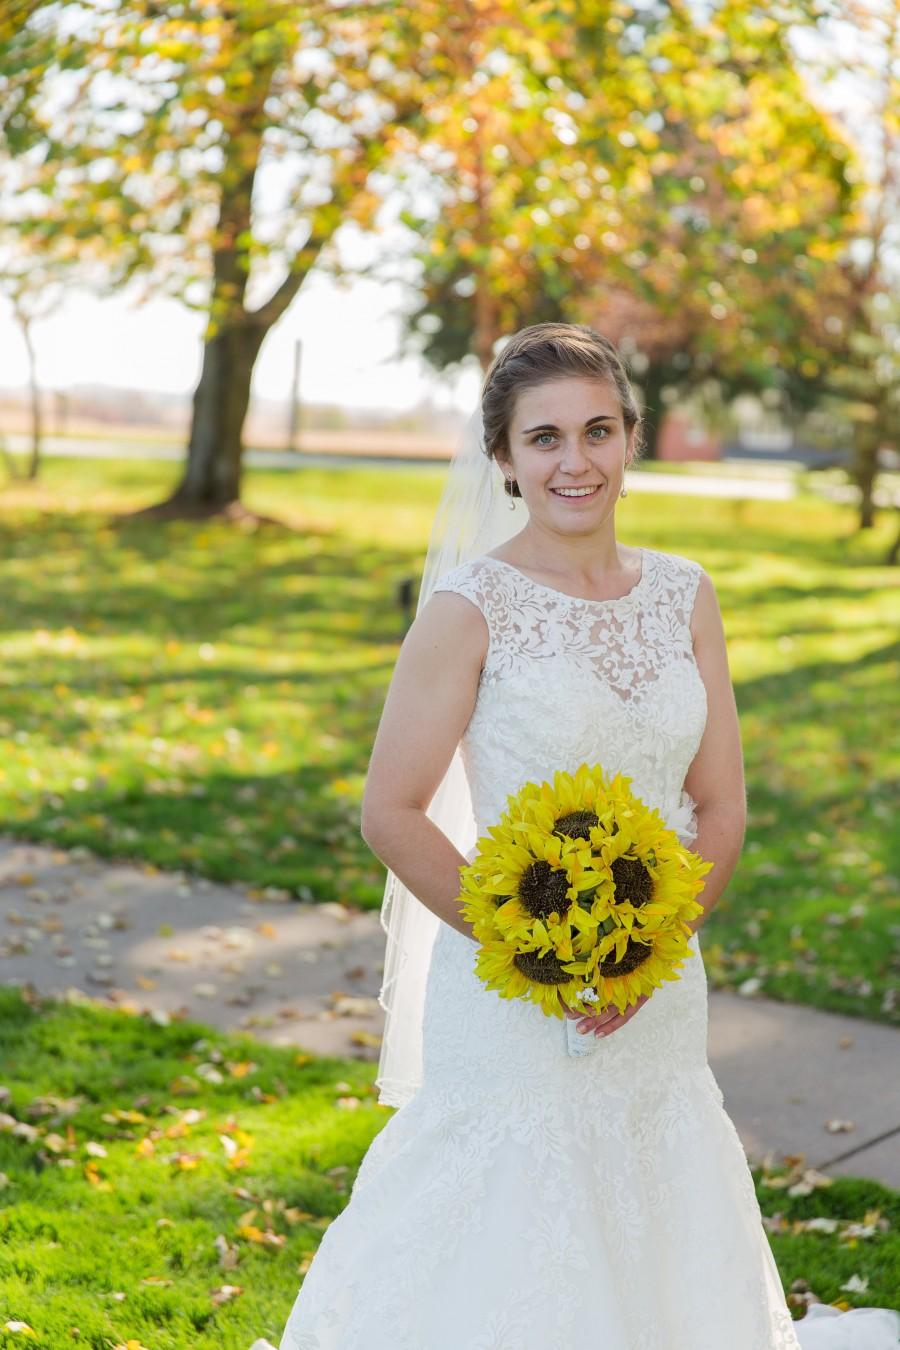 Hochzeit - Sunflower bridal bouquet! Wedding bouquet, bride bouquet, bouquet for wedding, sunflower, keepsake bouquet, sunflowers